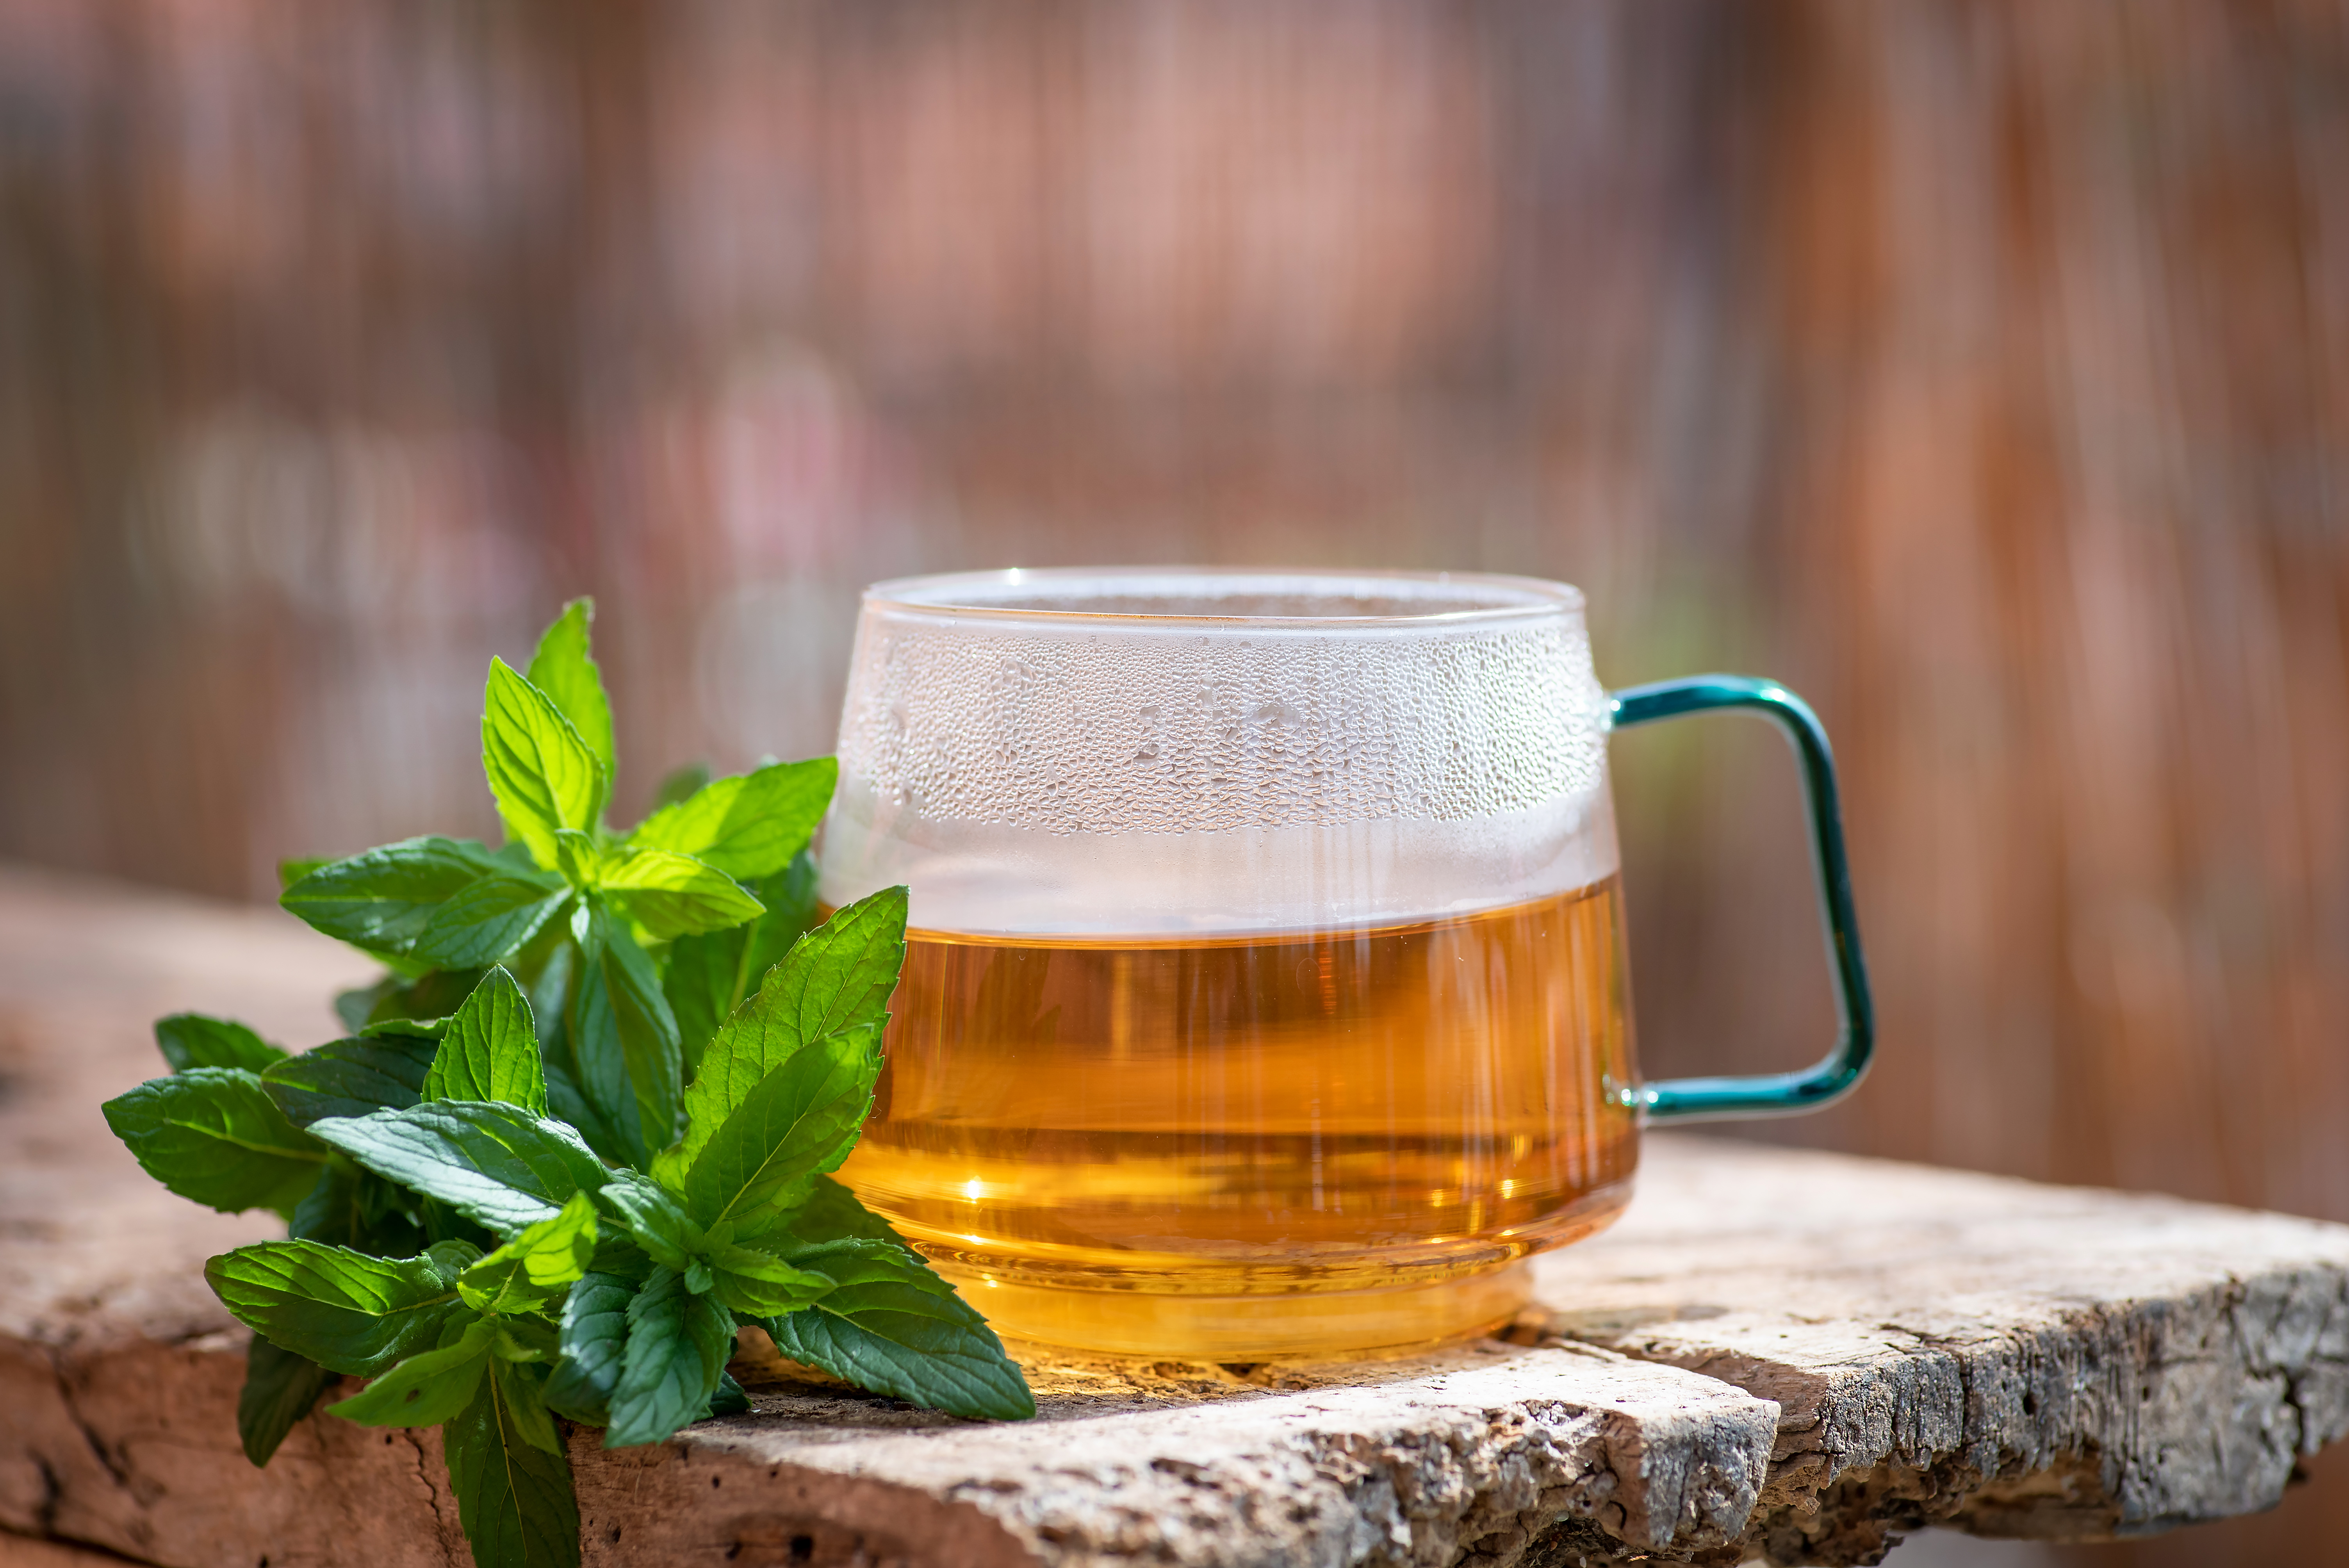 Obwohl der Tee helfen kann, den Hormonhaushalt auszugleichen, wird er nicht als alleinige Behandlung empfohlen